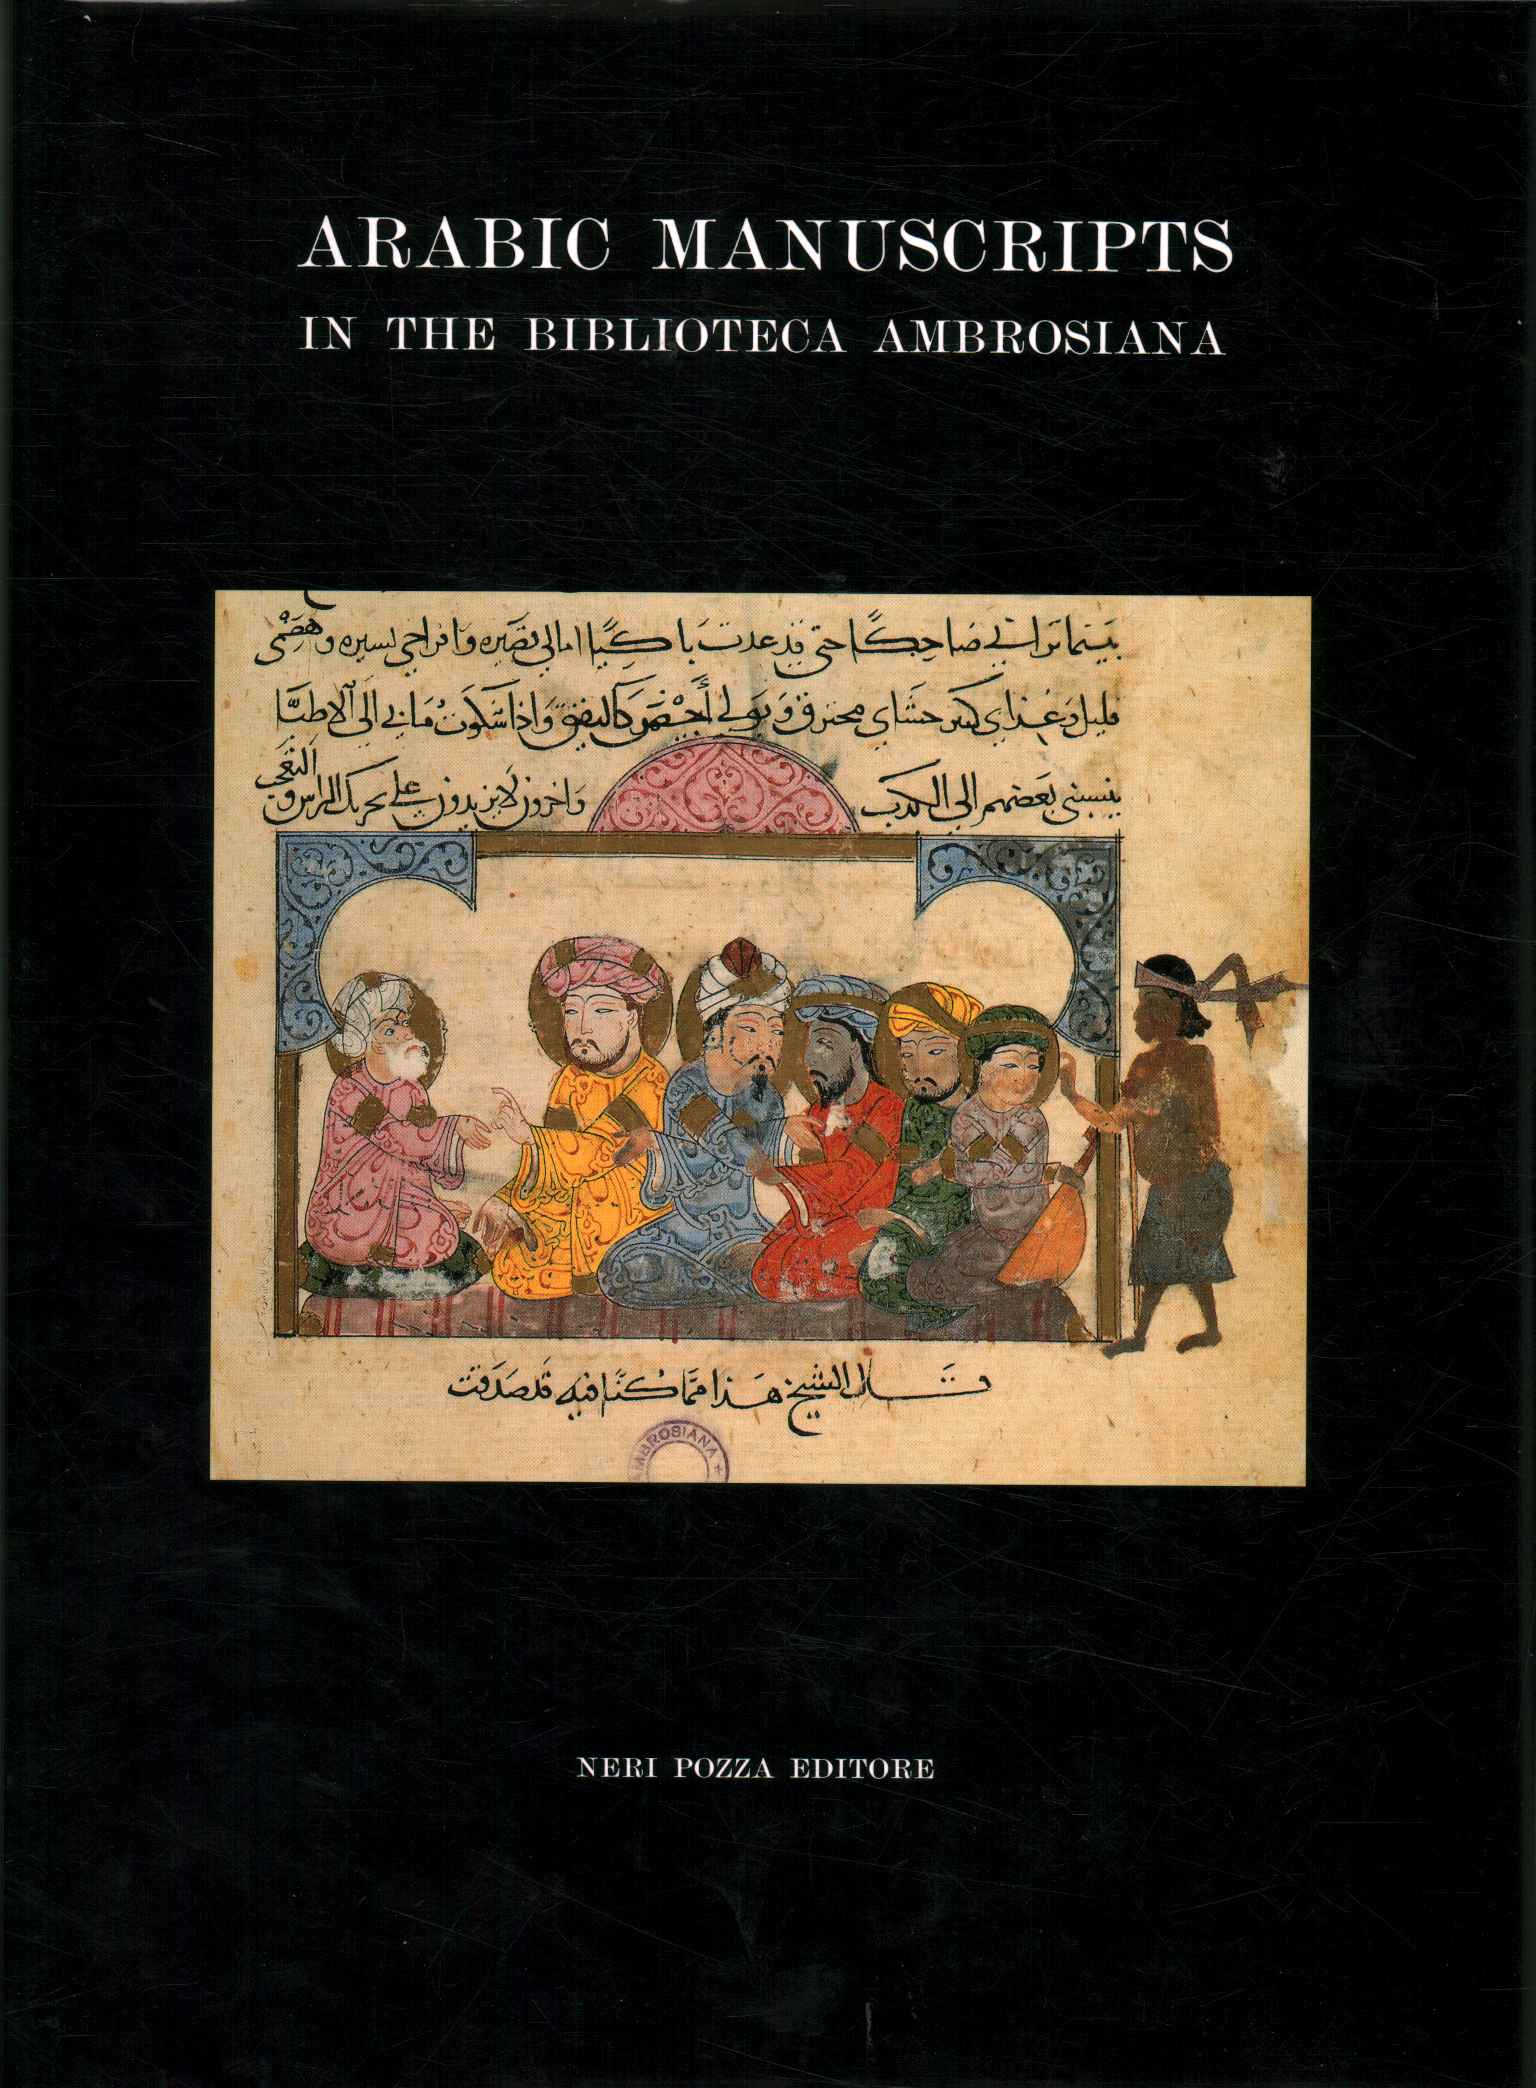 Catálogo de manuscritos árabes en%2,Catálogo de manuscritos árabes en%2